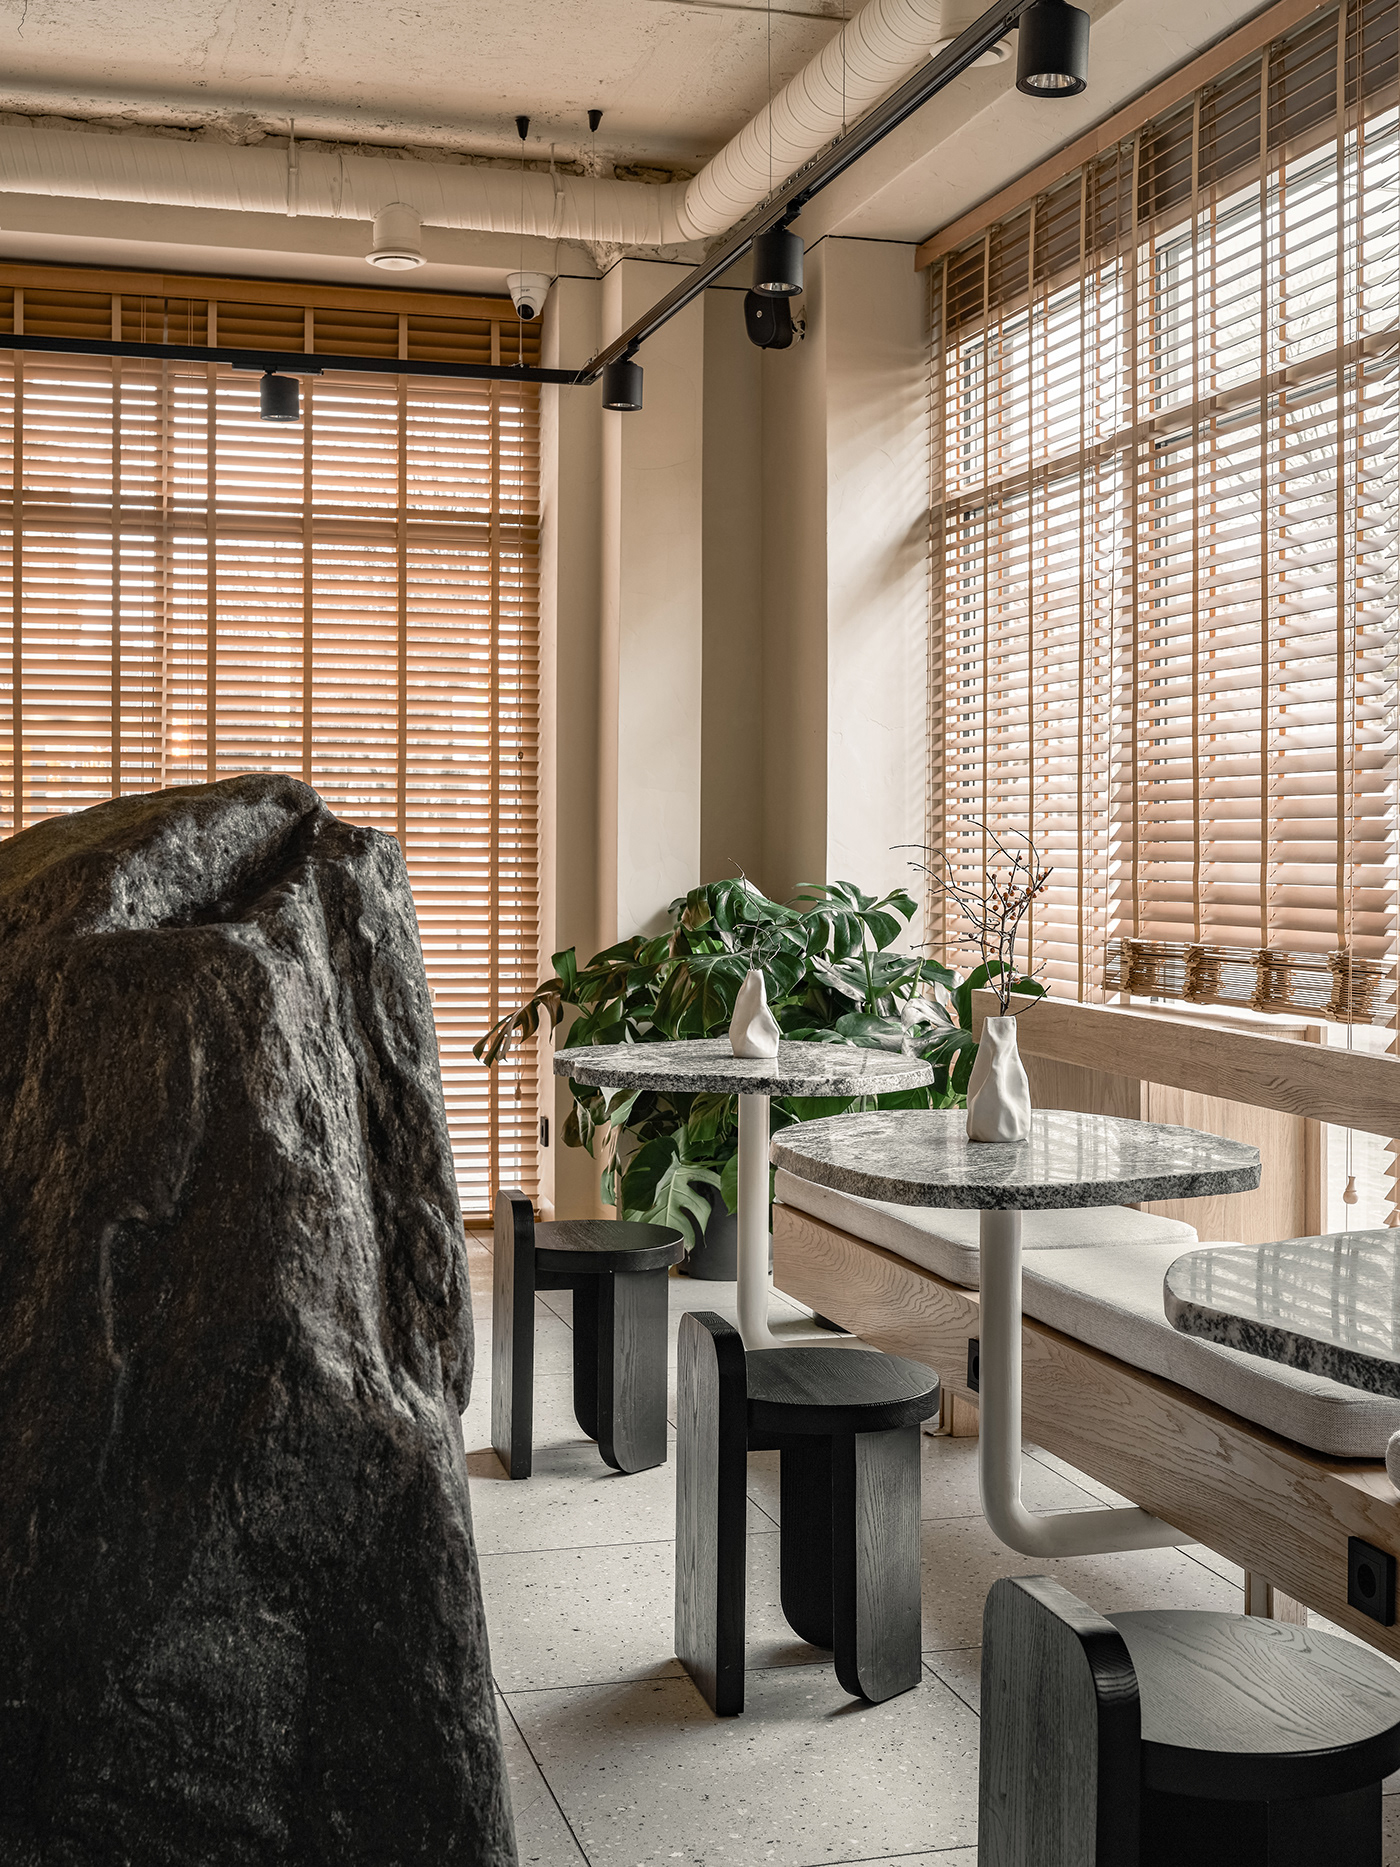 bakery bread cafe Coffee design Interior stone Terrazzo